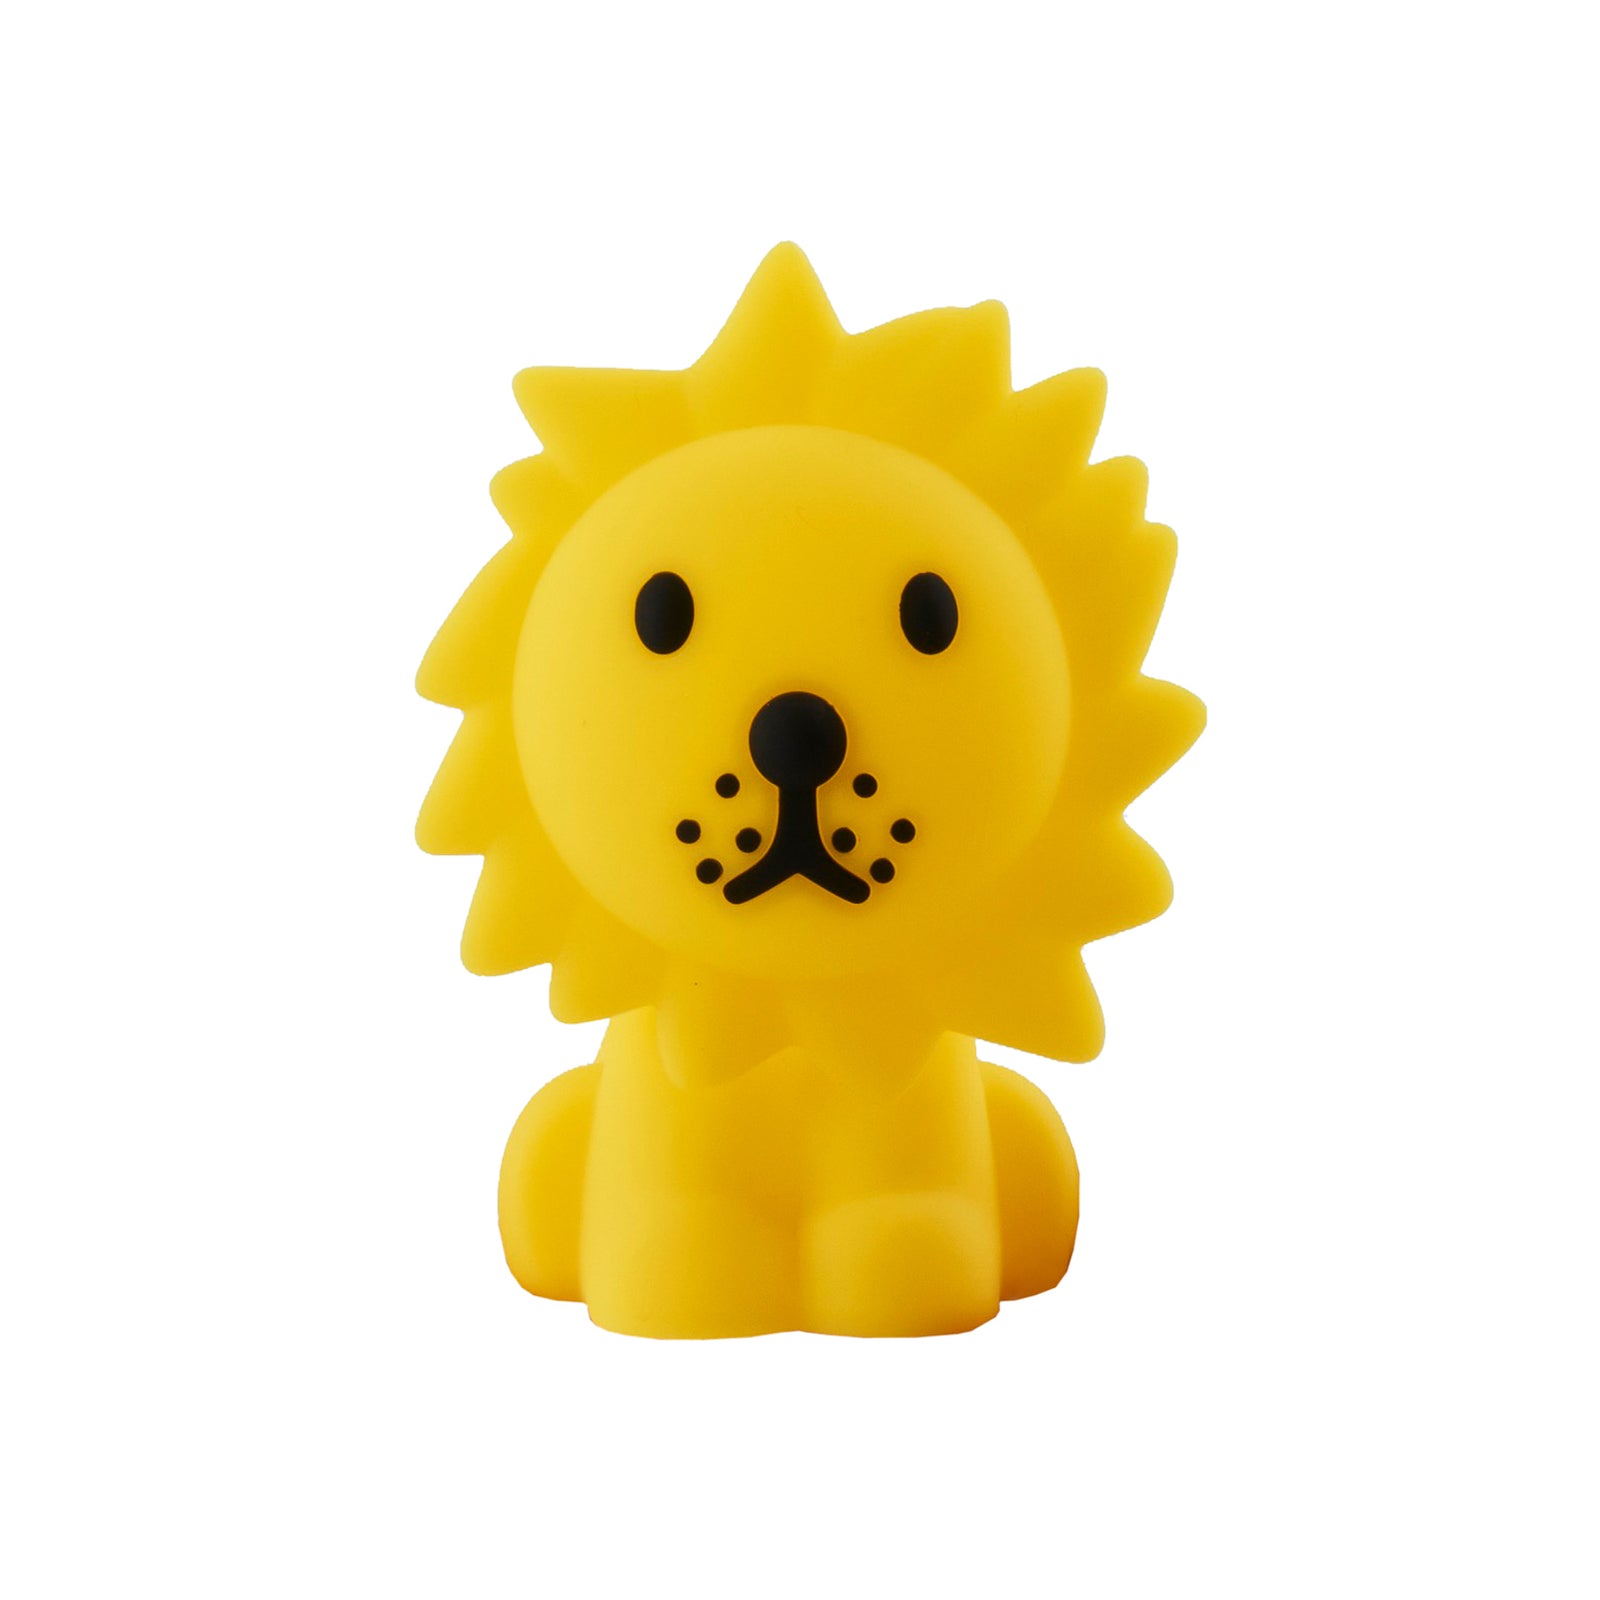 Mrmaria: Lion lion paquet de lampe de lampe de lampe de lampe légère